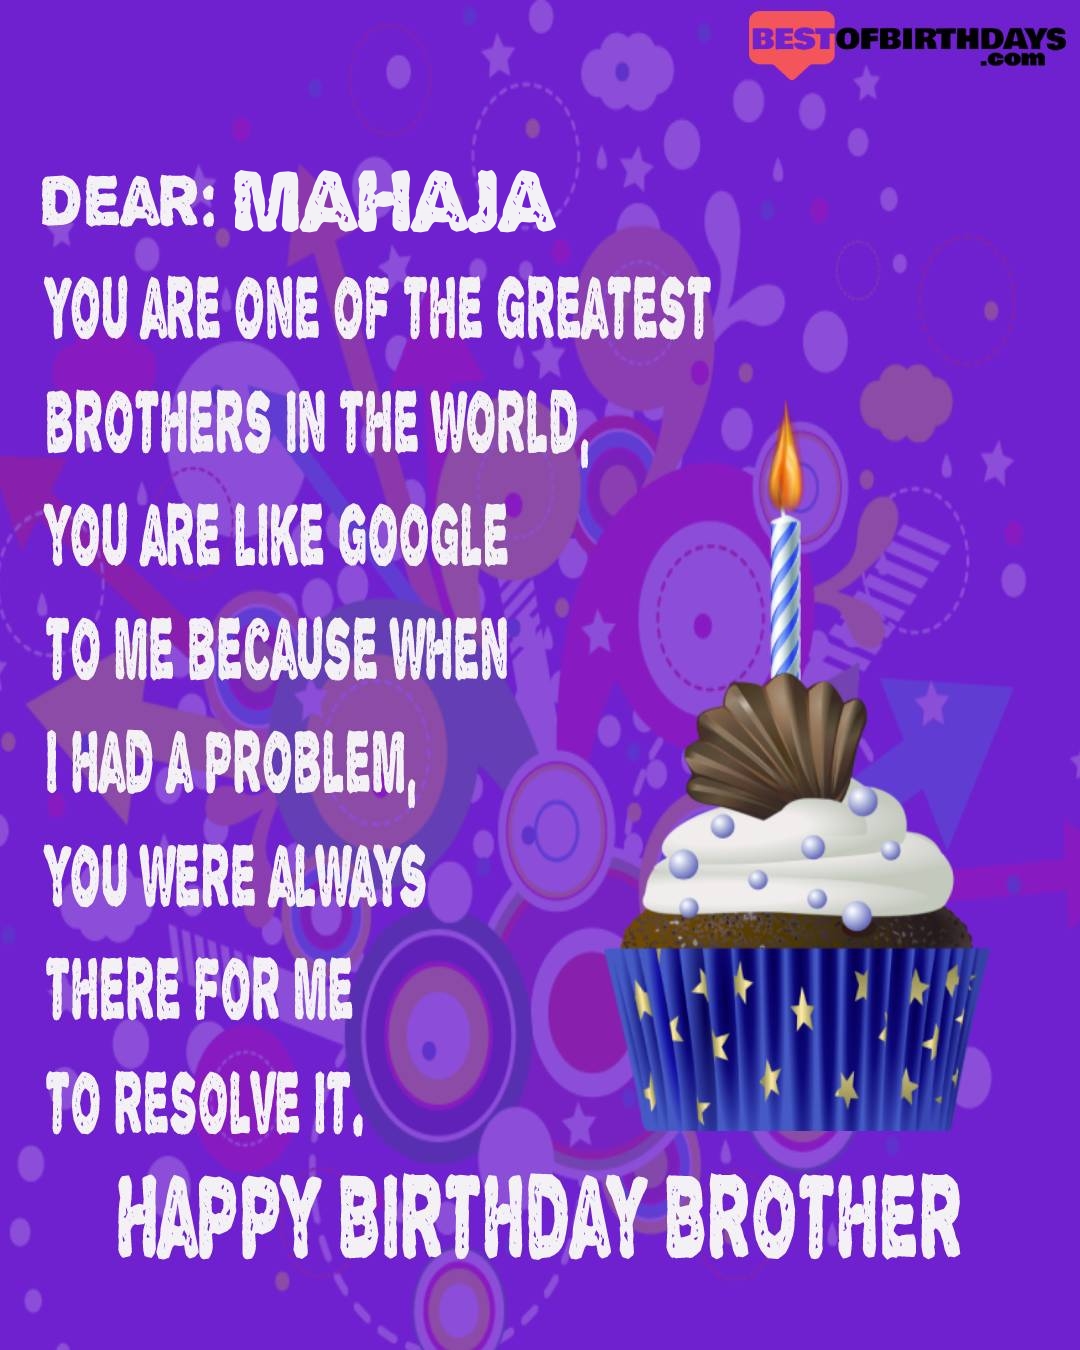 Happy birthday mahaja bhai brother bro